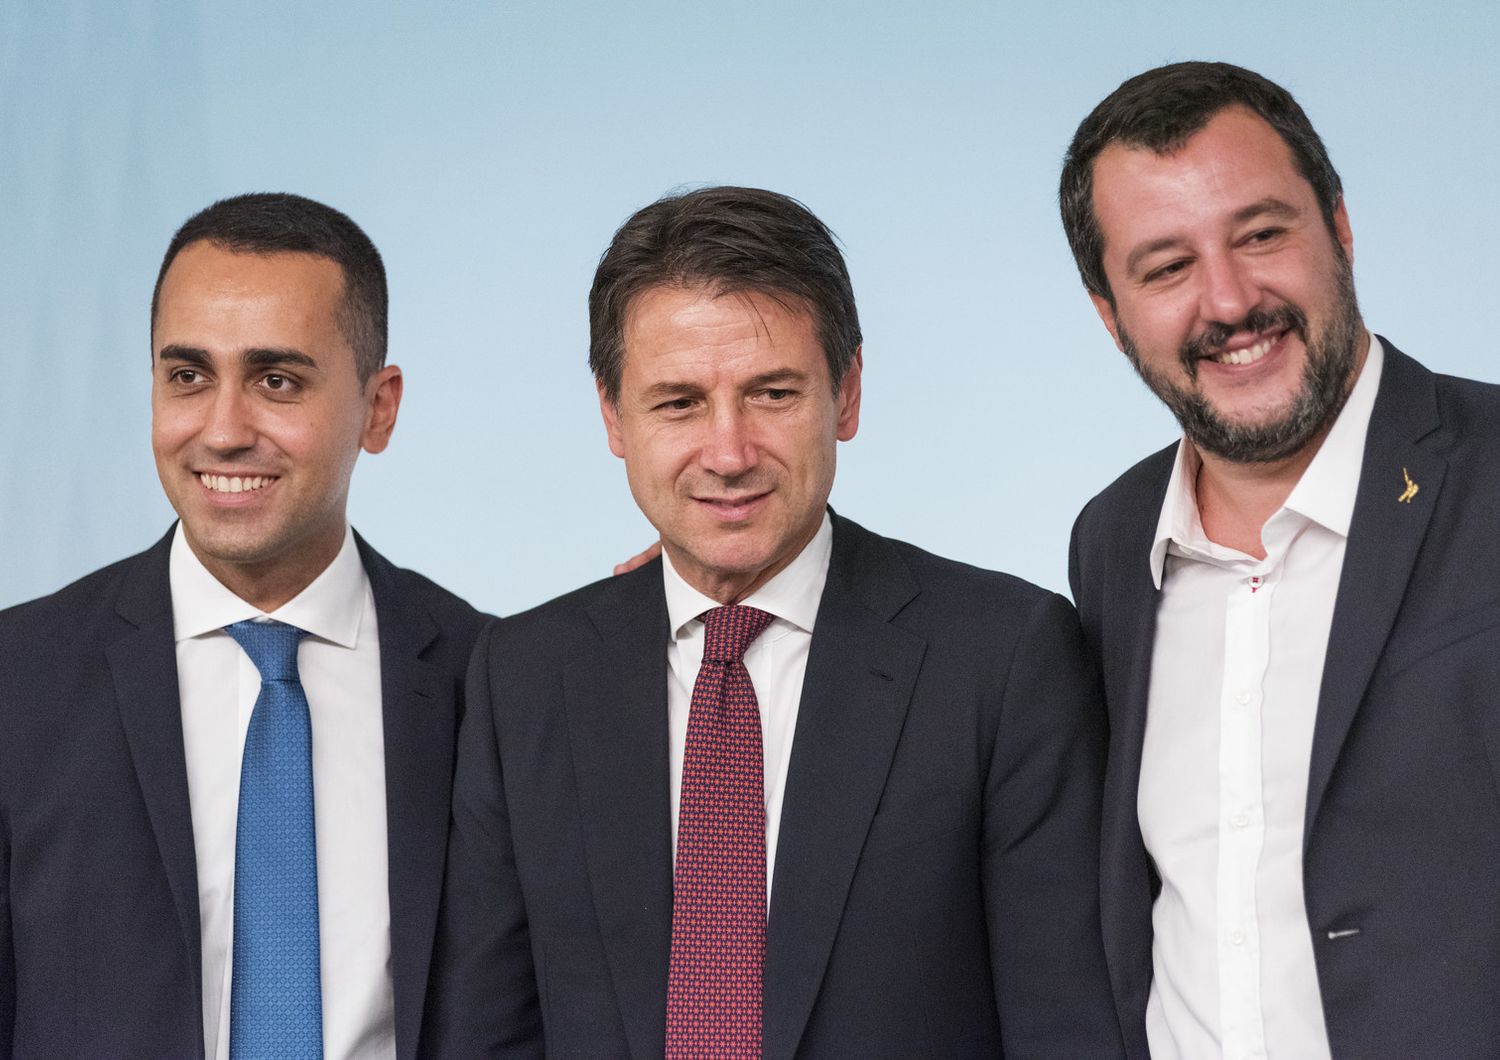 &nbsp;&nbsp;Luigi Di Maio, Giuseppe Conte, Matteo Salvini&nbsp;